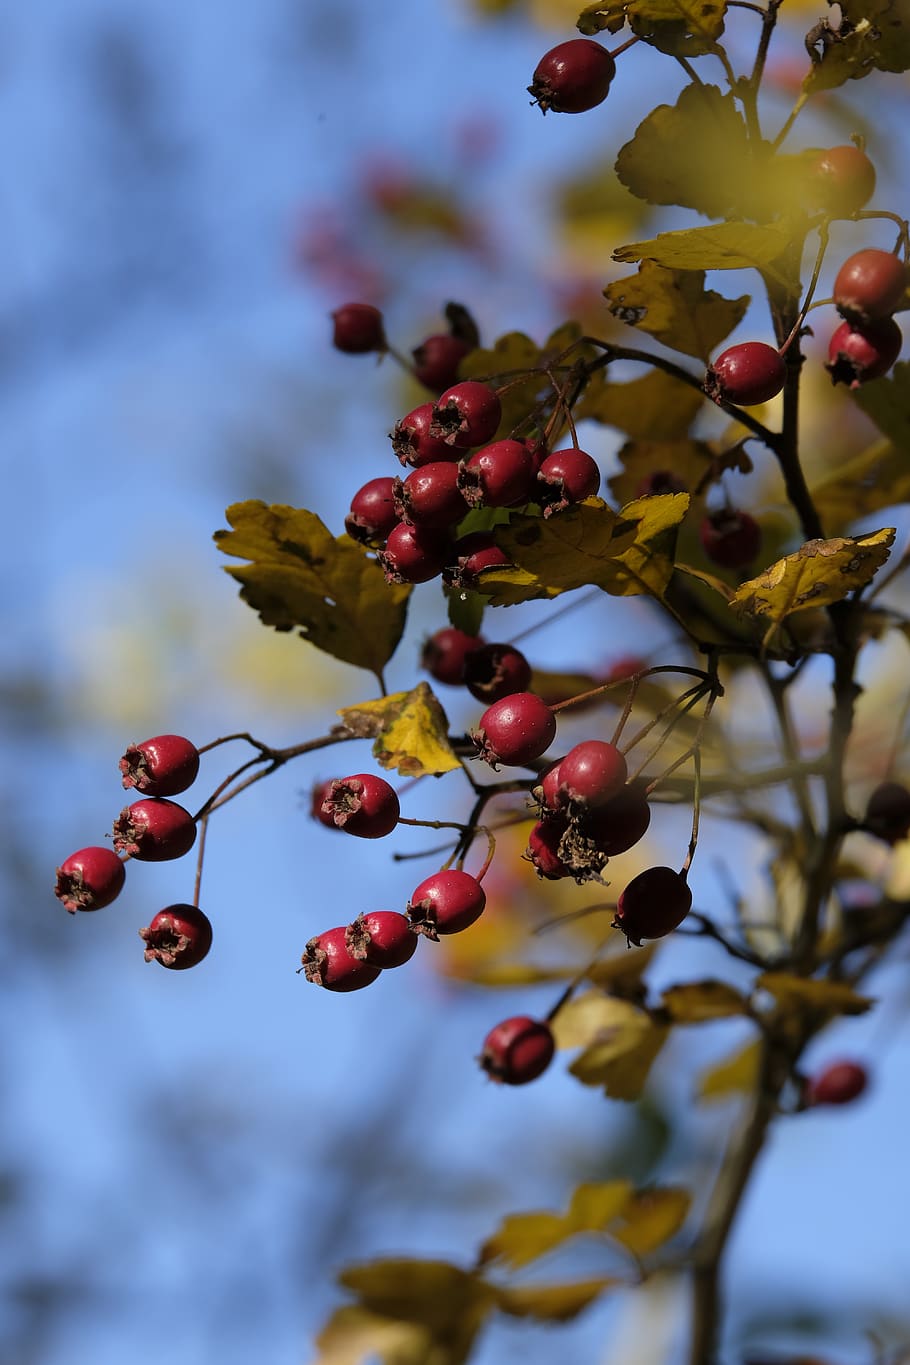 листья шиповника фото осенью